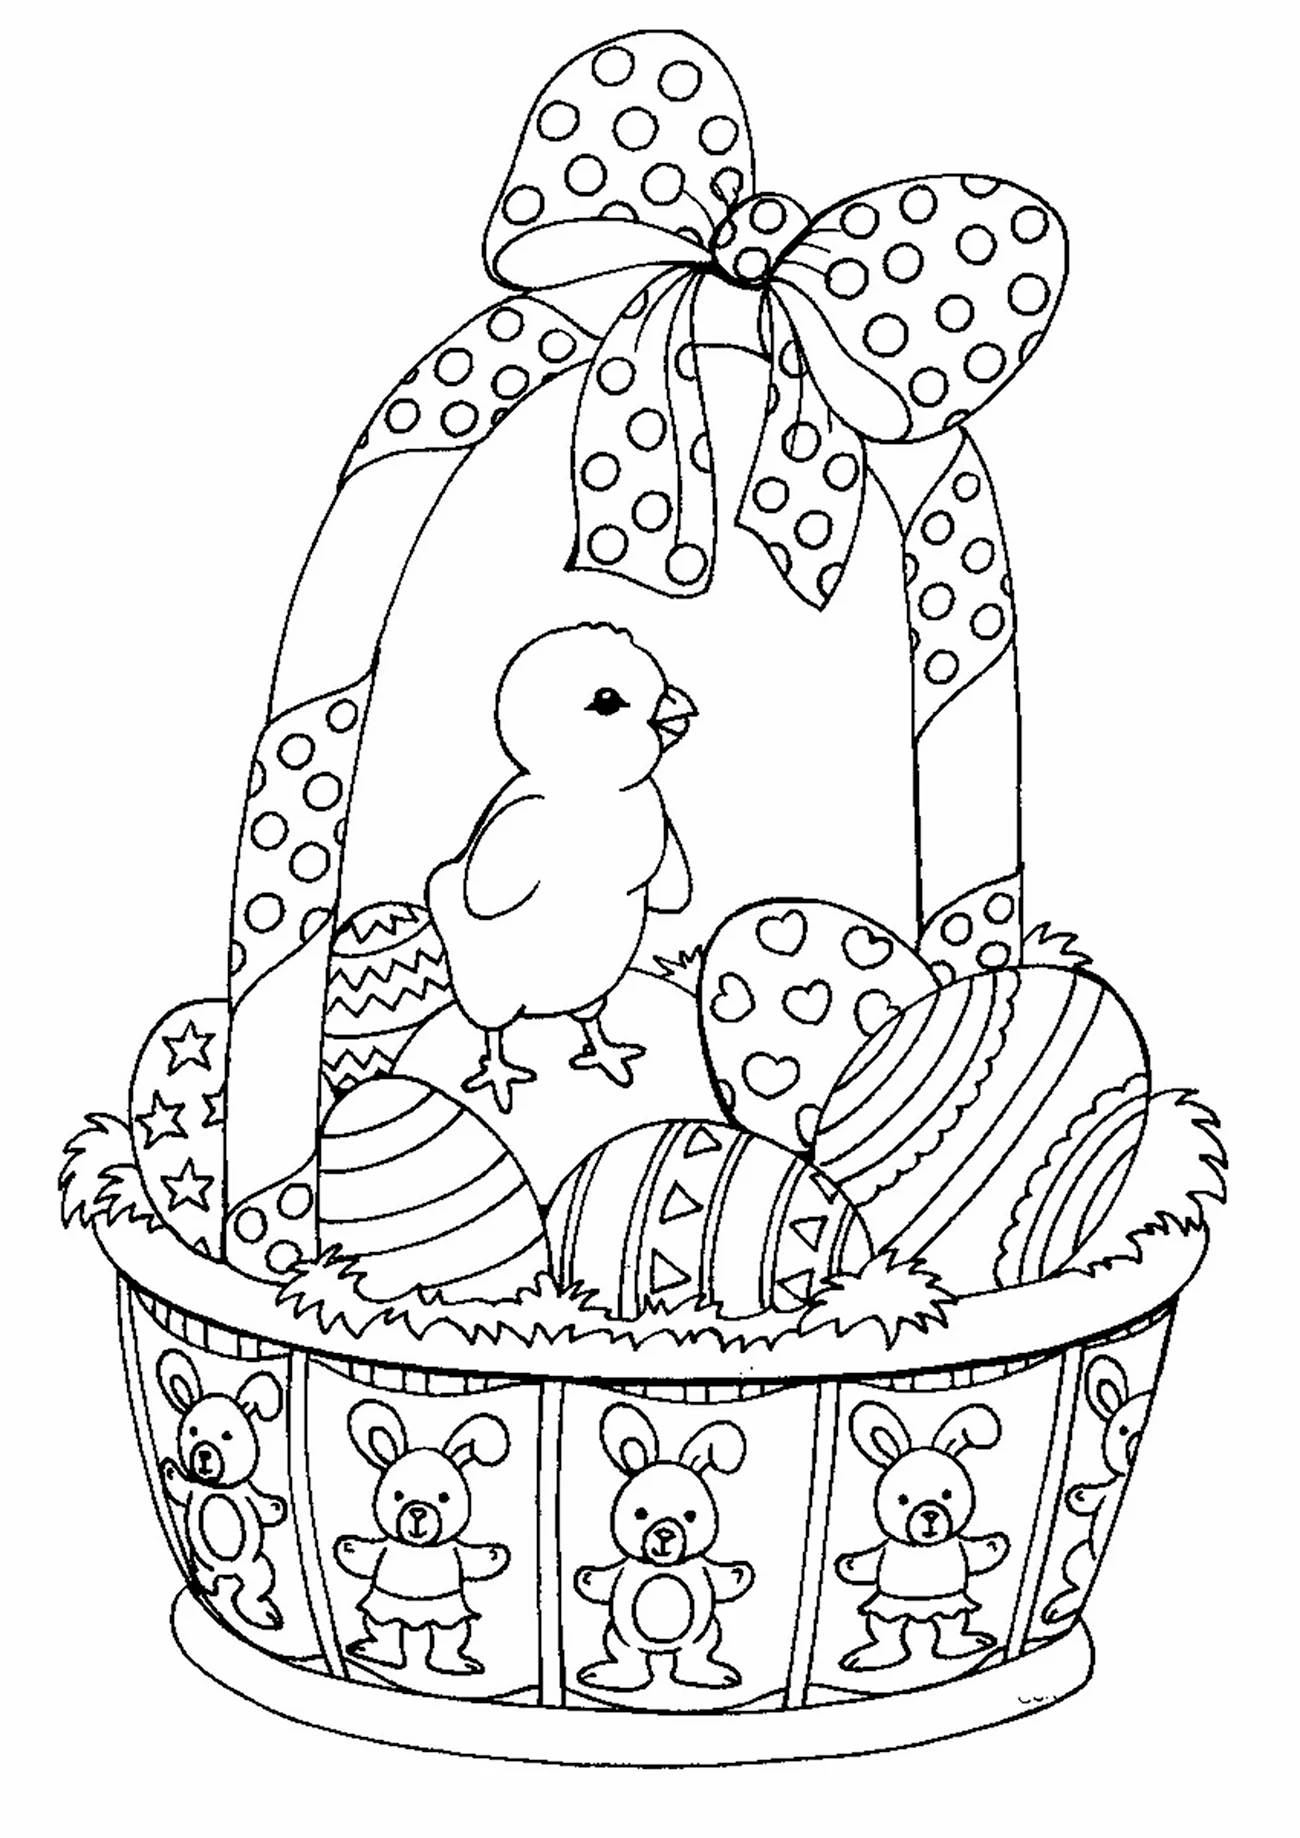 Раскраска Пасхальный кулич и яйца. Для срисовки